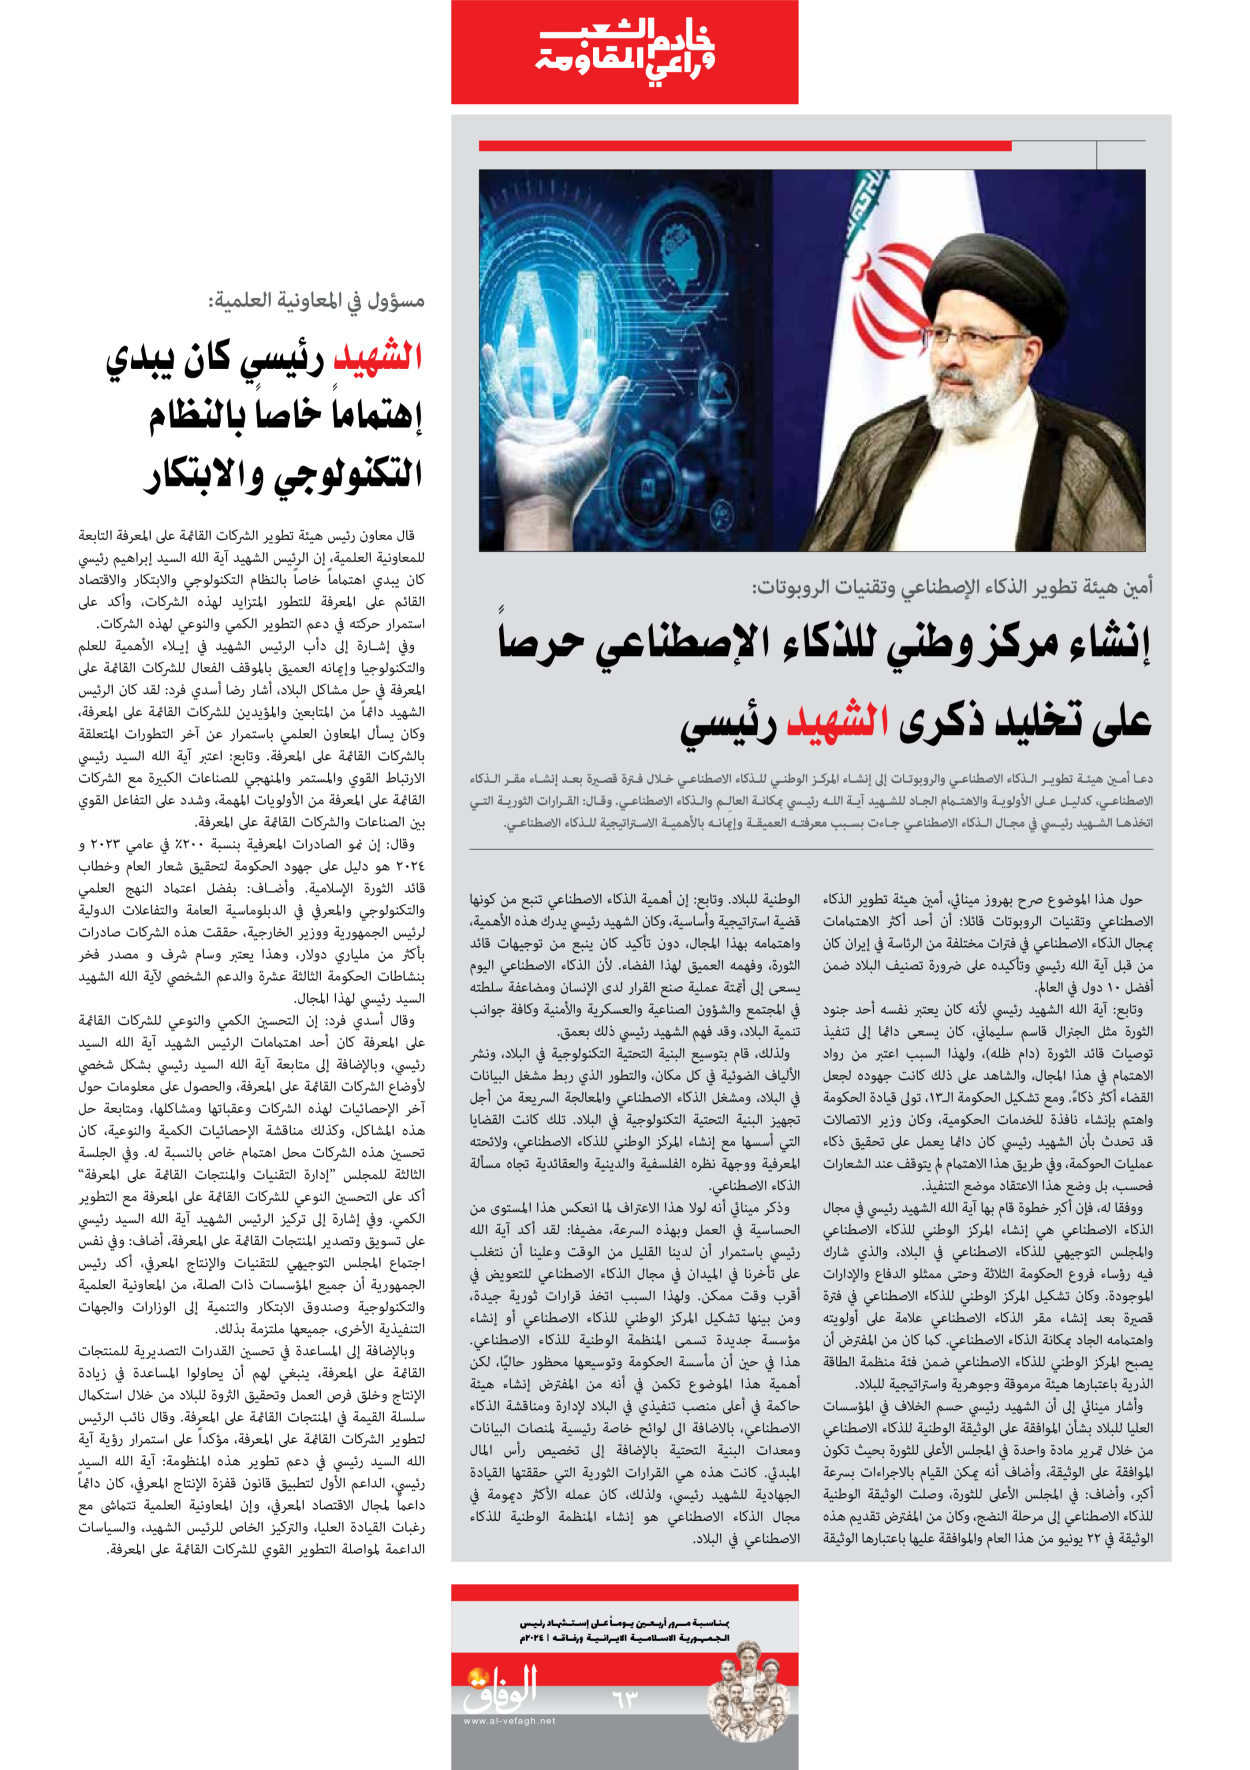 صحیفة ایران الدولیة الوفاق - ملحق ویژه نامه چهلم شهید رییسی - ٢٩ يونيو ٢٠٢٤ - الصفحة ٦۳